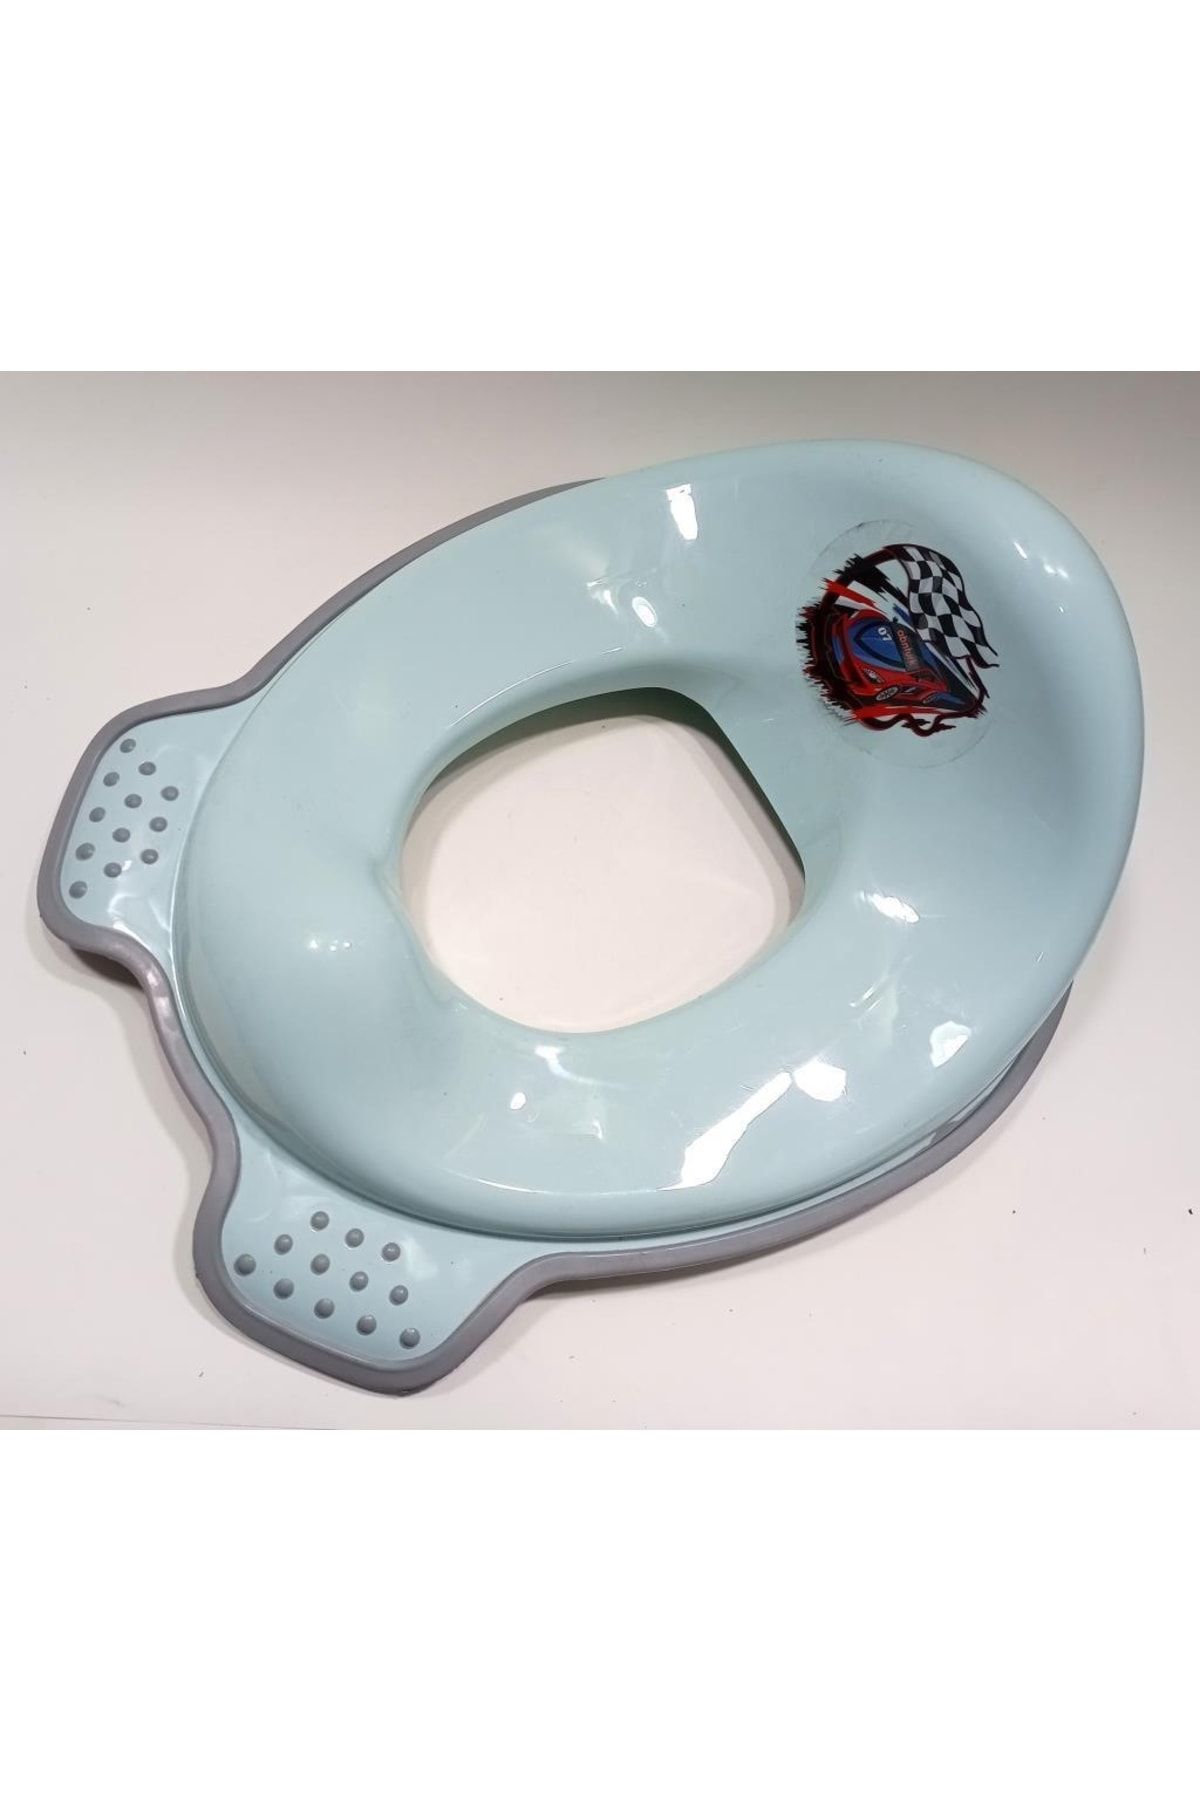 abnturk Yetişkin Klozetini Çocuk Klozeti Yapan Sağlam Ergonomik Aparat Bebek Tuvalet Alıştırma Adaptörü Yşg